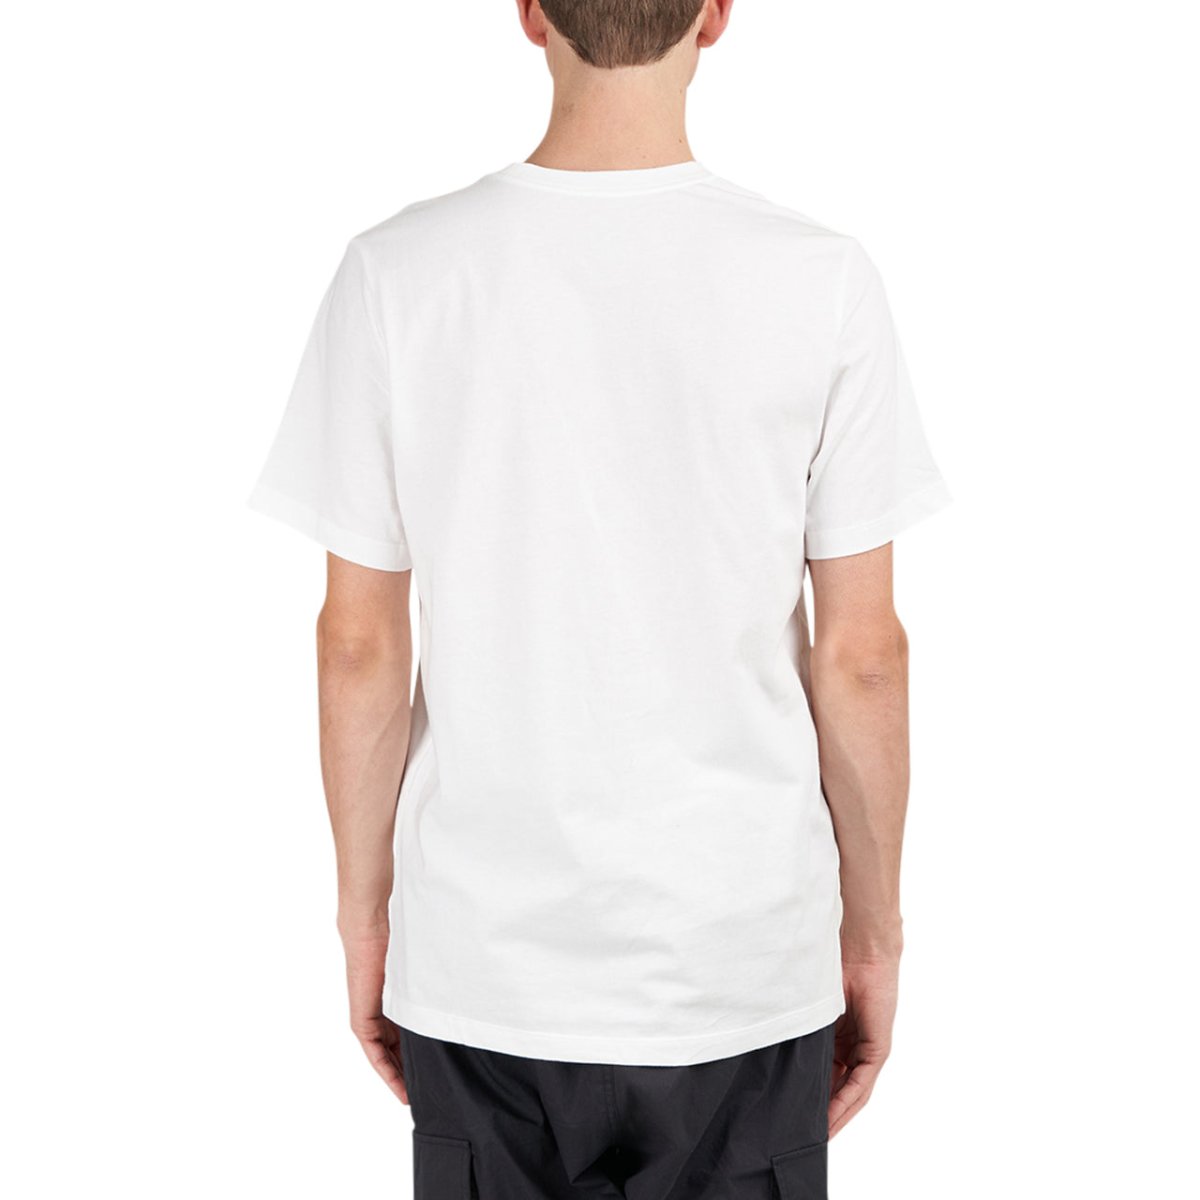 Nike Club T-Shirt (Weiss)  - Allike Store